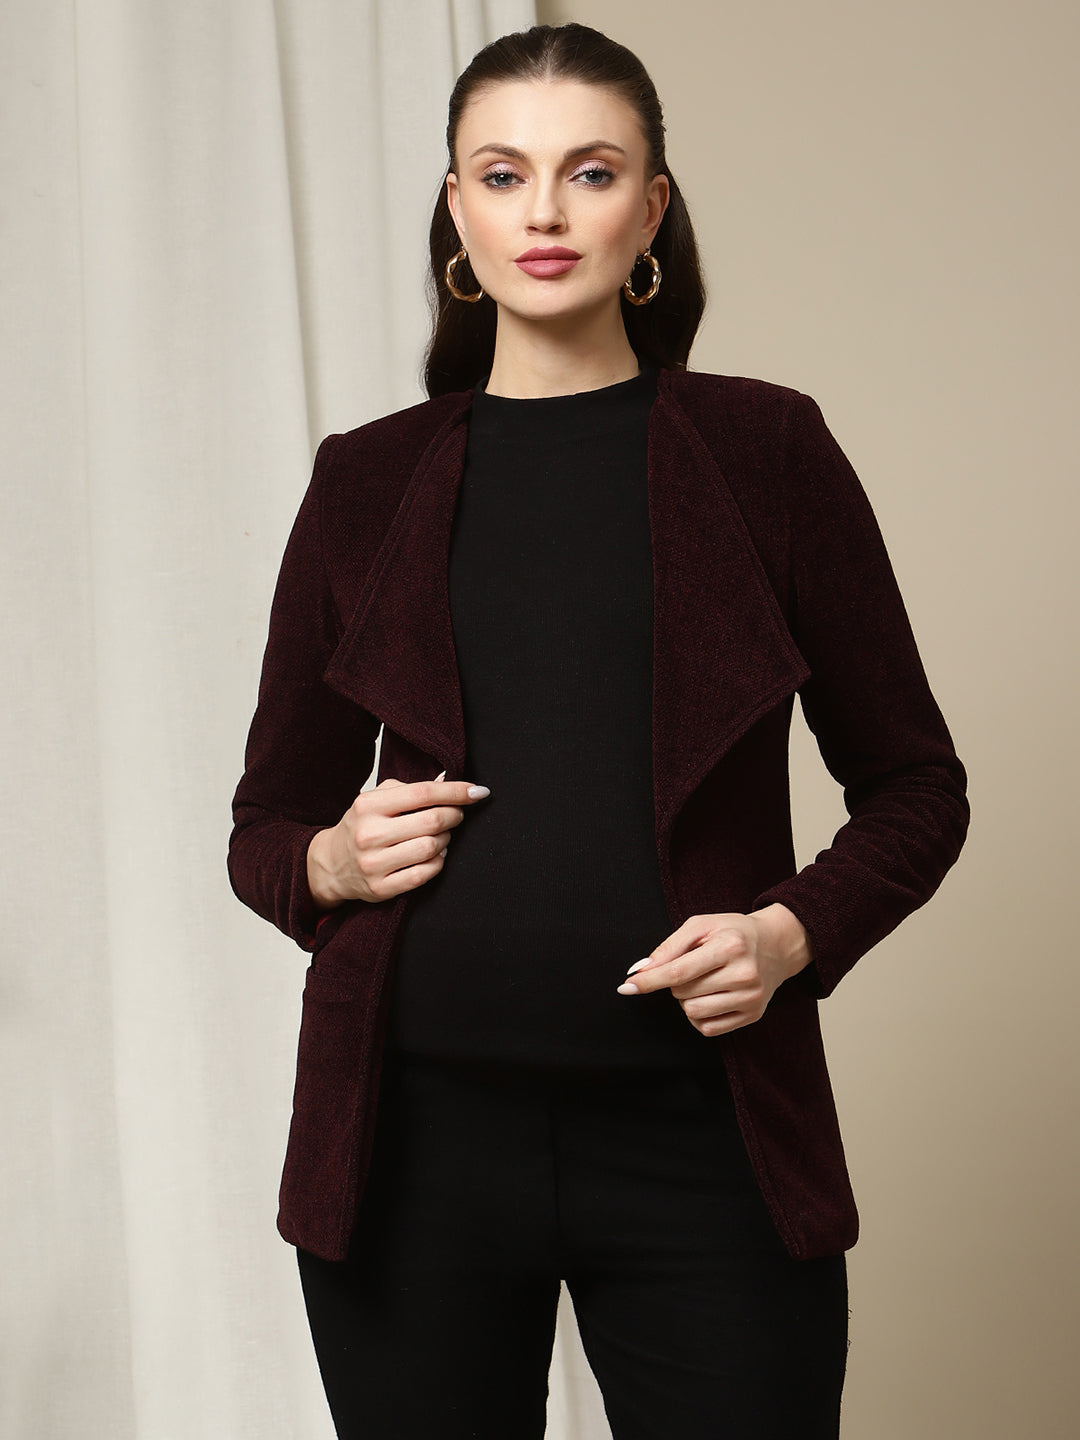 https://www.wobblywalk.com/cdn/shop/products/maternity-winter-woolen-jacket-purple-1_2400x.jpg?v=1661866464